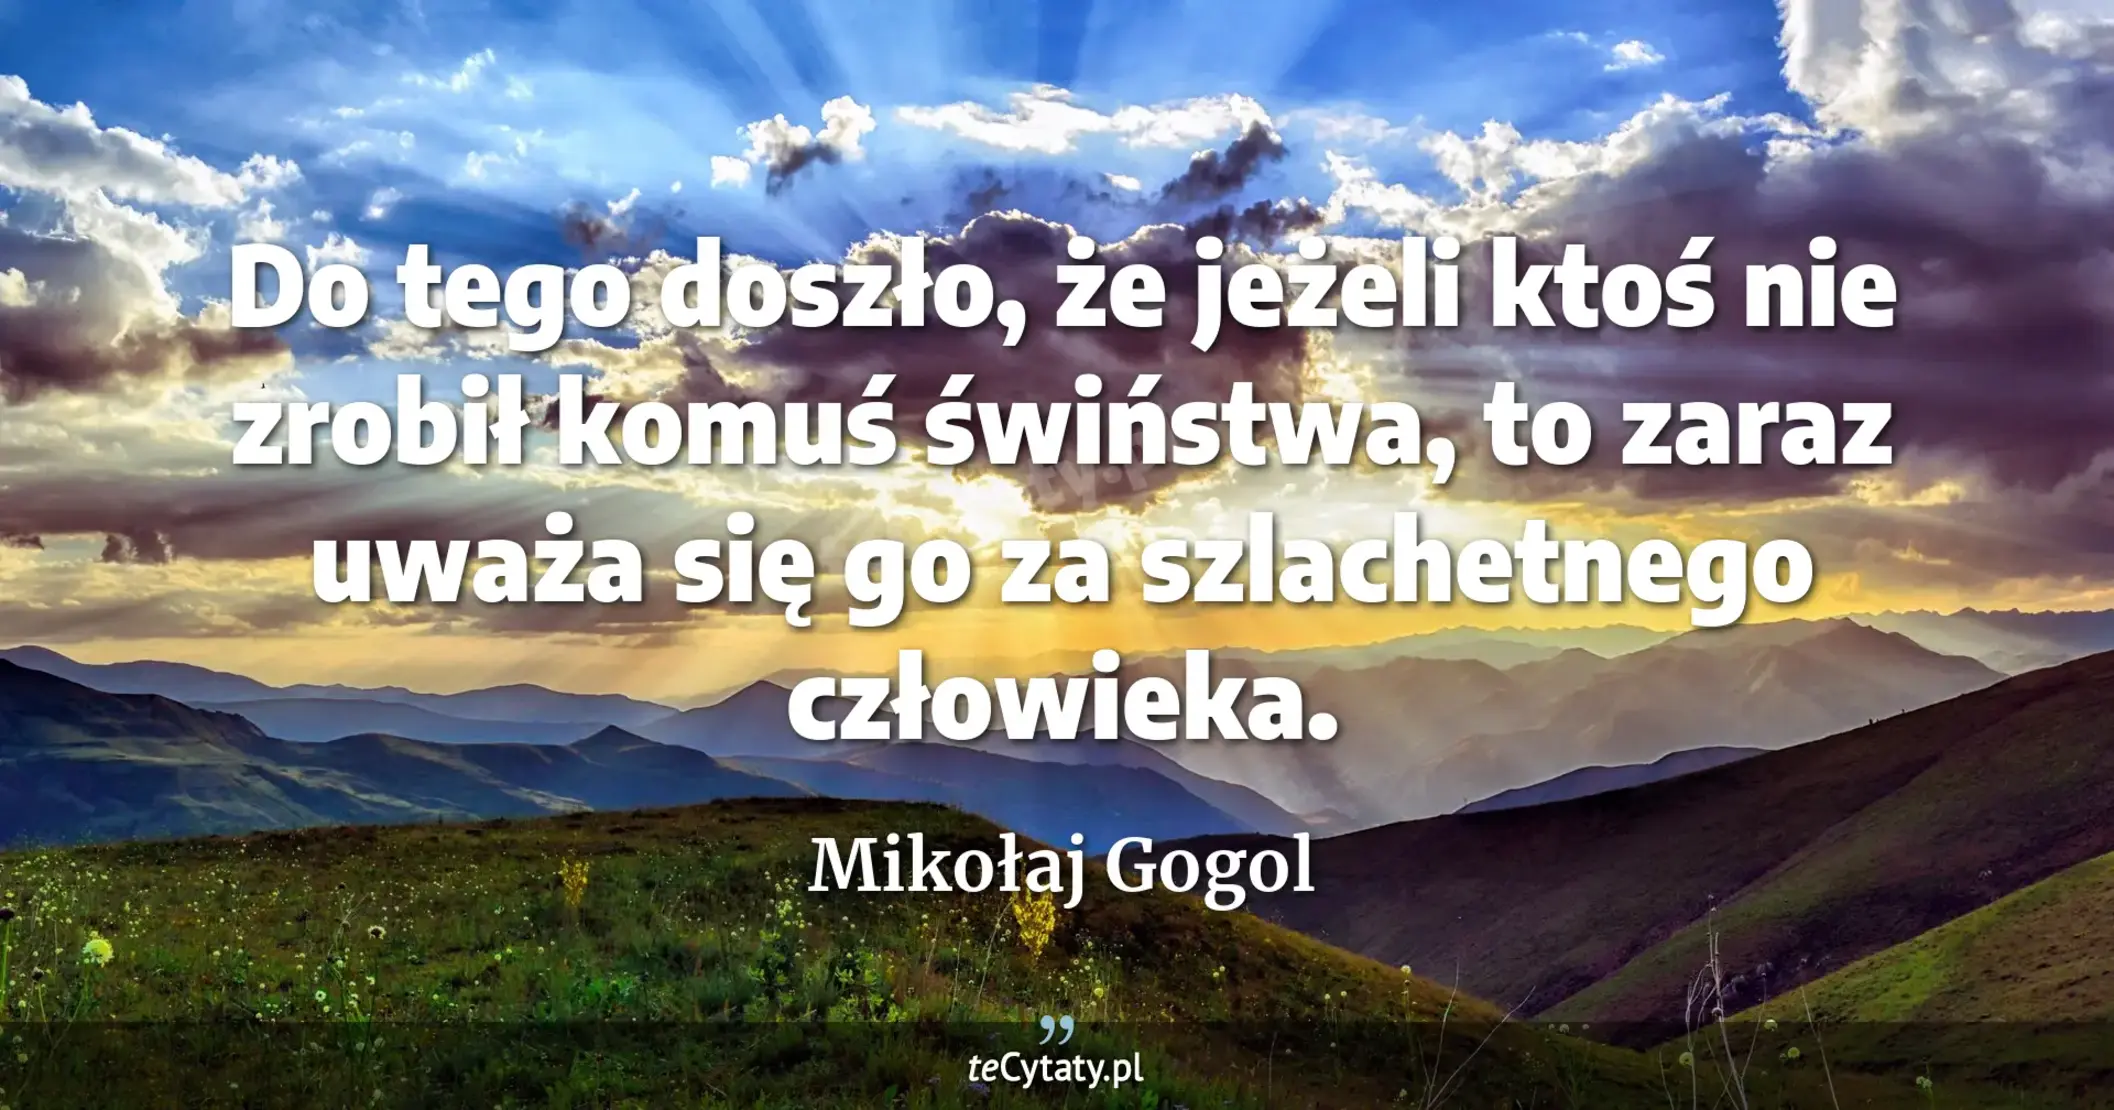 Do tego doszło, że jeżeli ktoś nie zrobił komuś świństwa, to zaraz uważa się go za szlachetnego człowieka. - Mikołaj Gogol